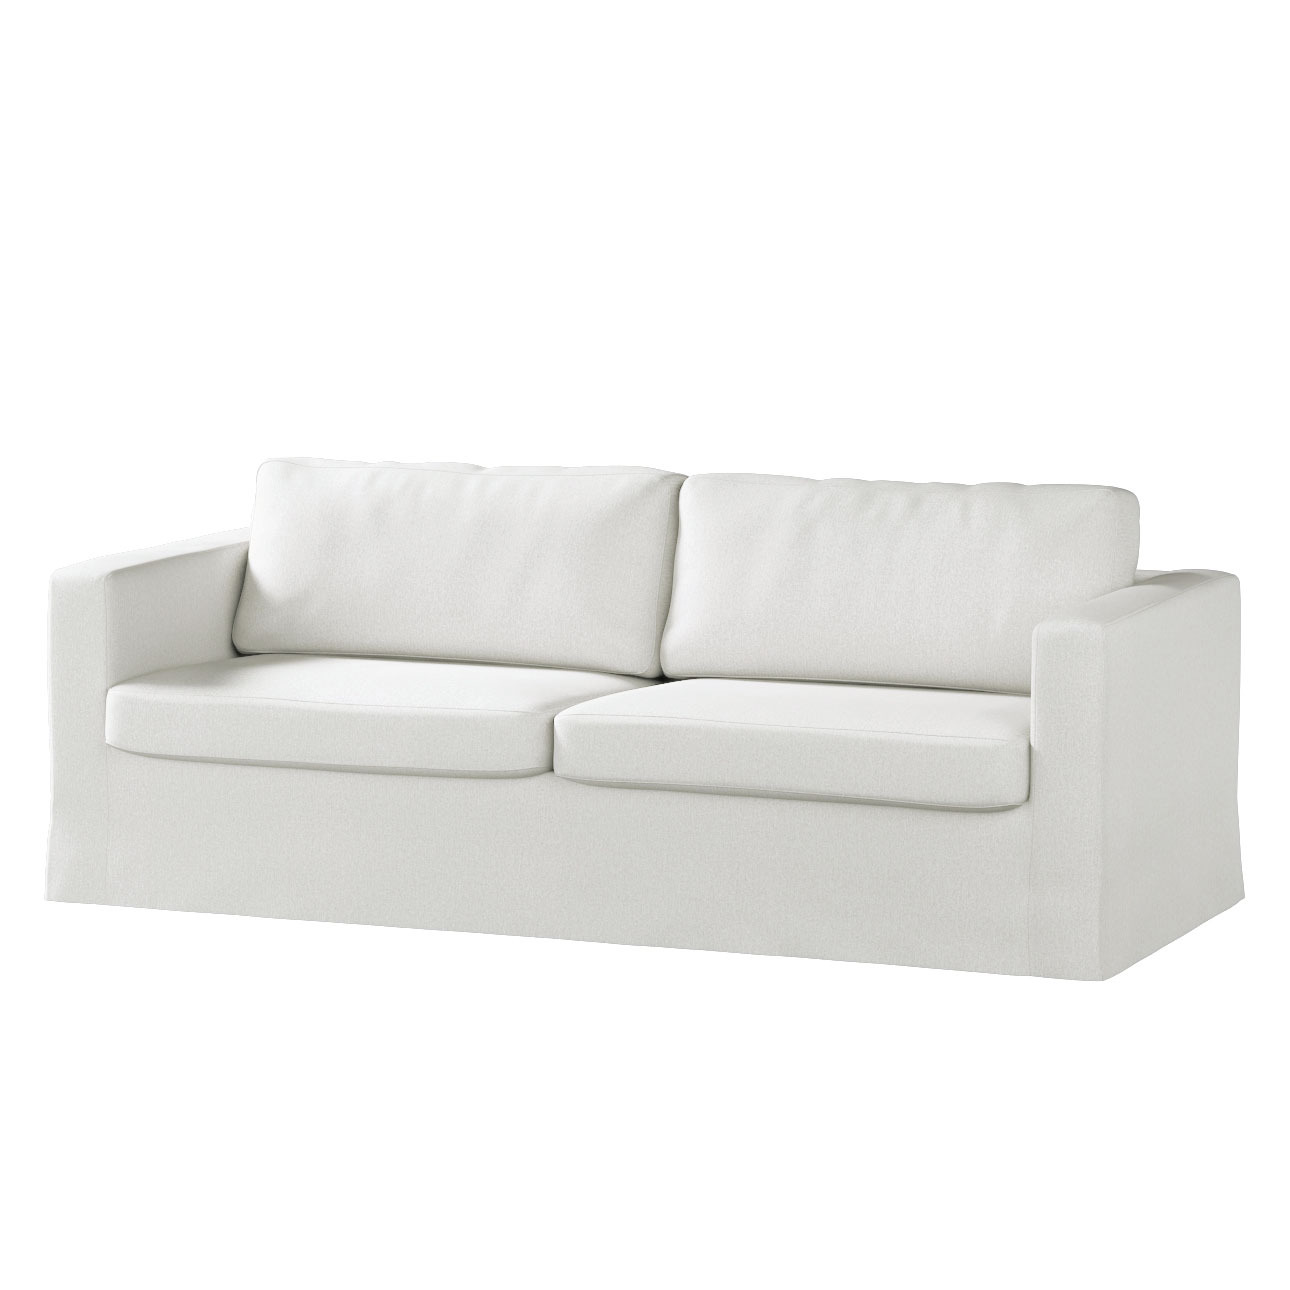 Bezug für Karlstad 3-Sitzer Sofa nicht ausklappbar, lang, creme, Bezug für günstig online kaufen